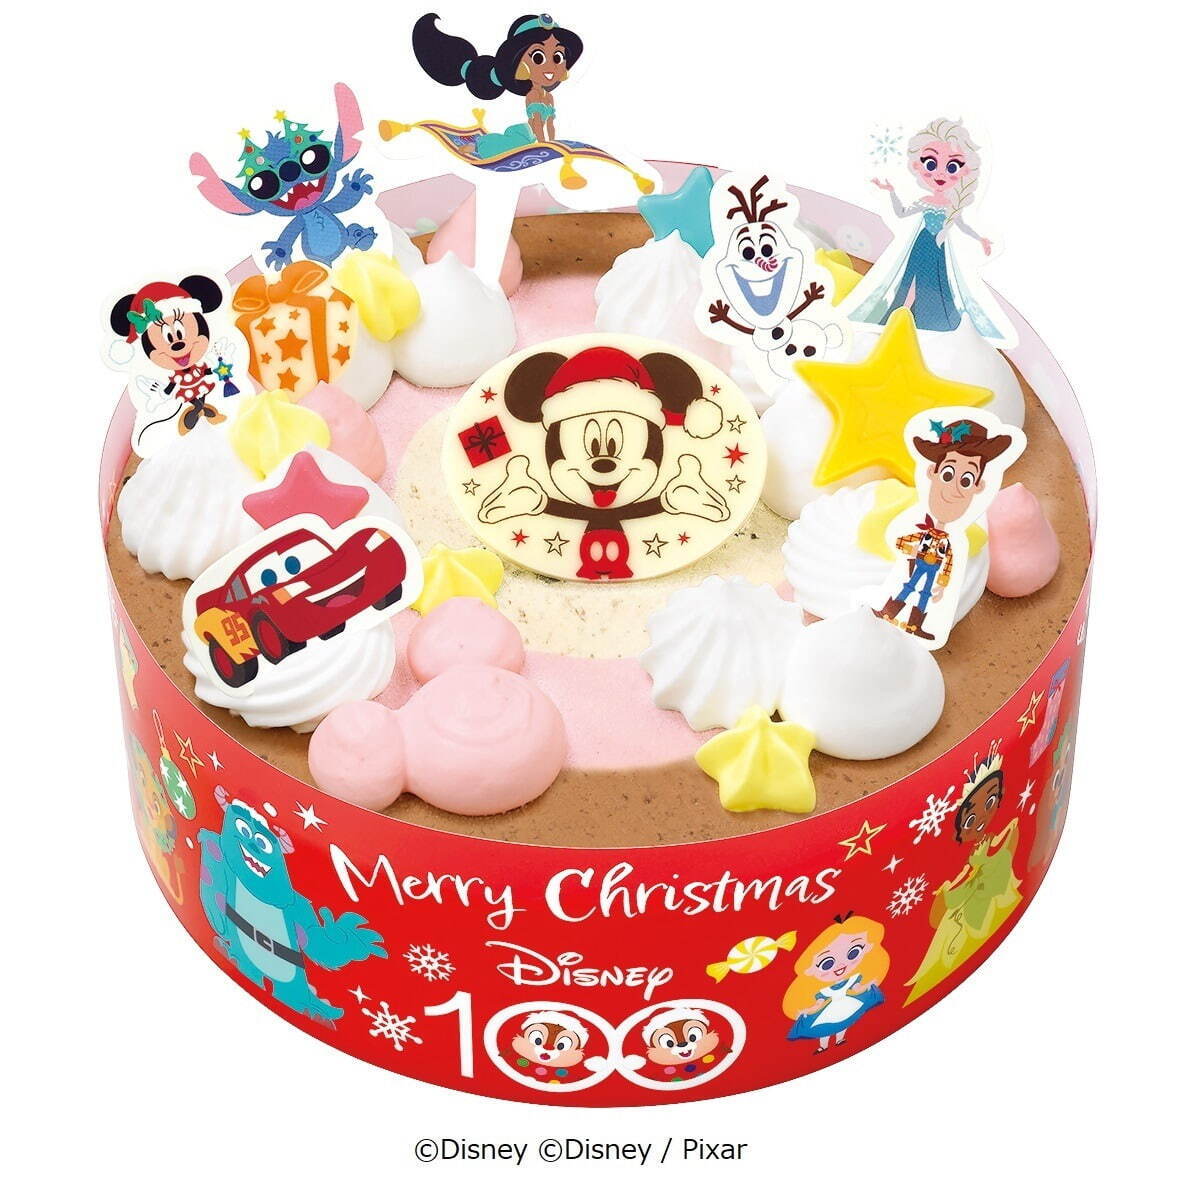 ディズニー100 / マジカルクリスマス
参考価格 3,500円
※店舗によって価格は異なる。